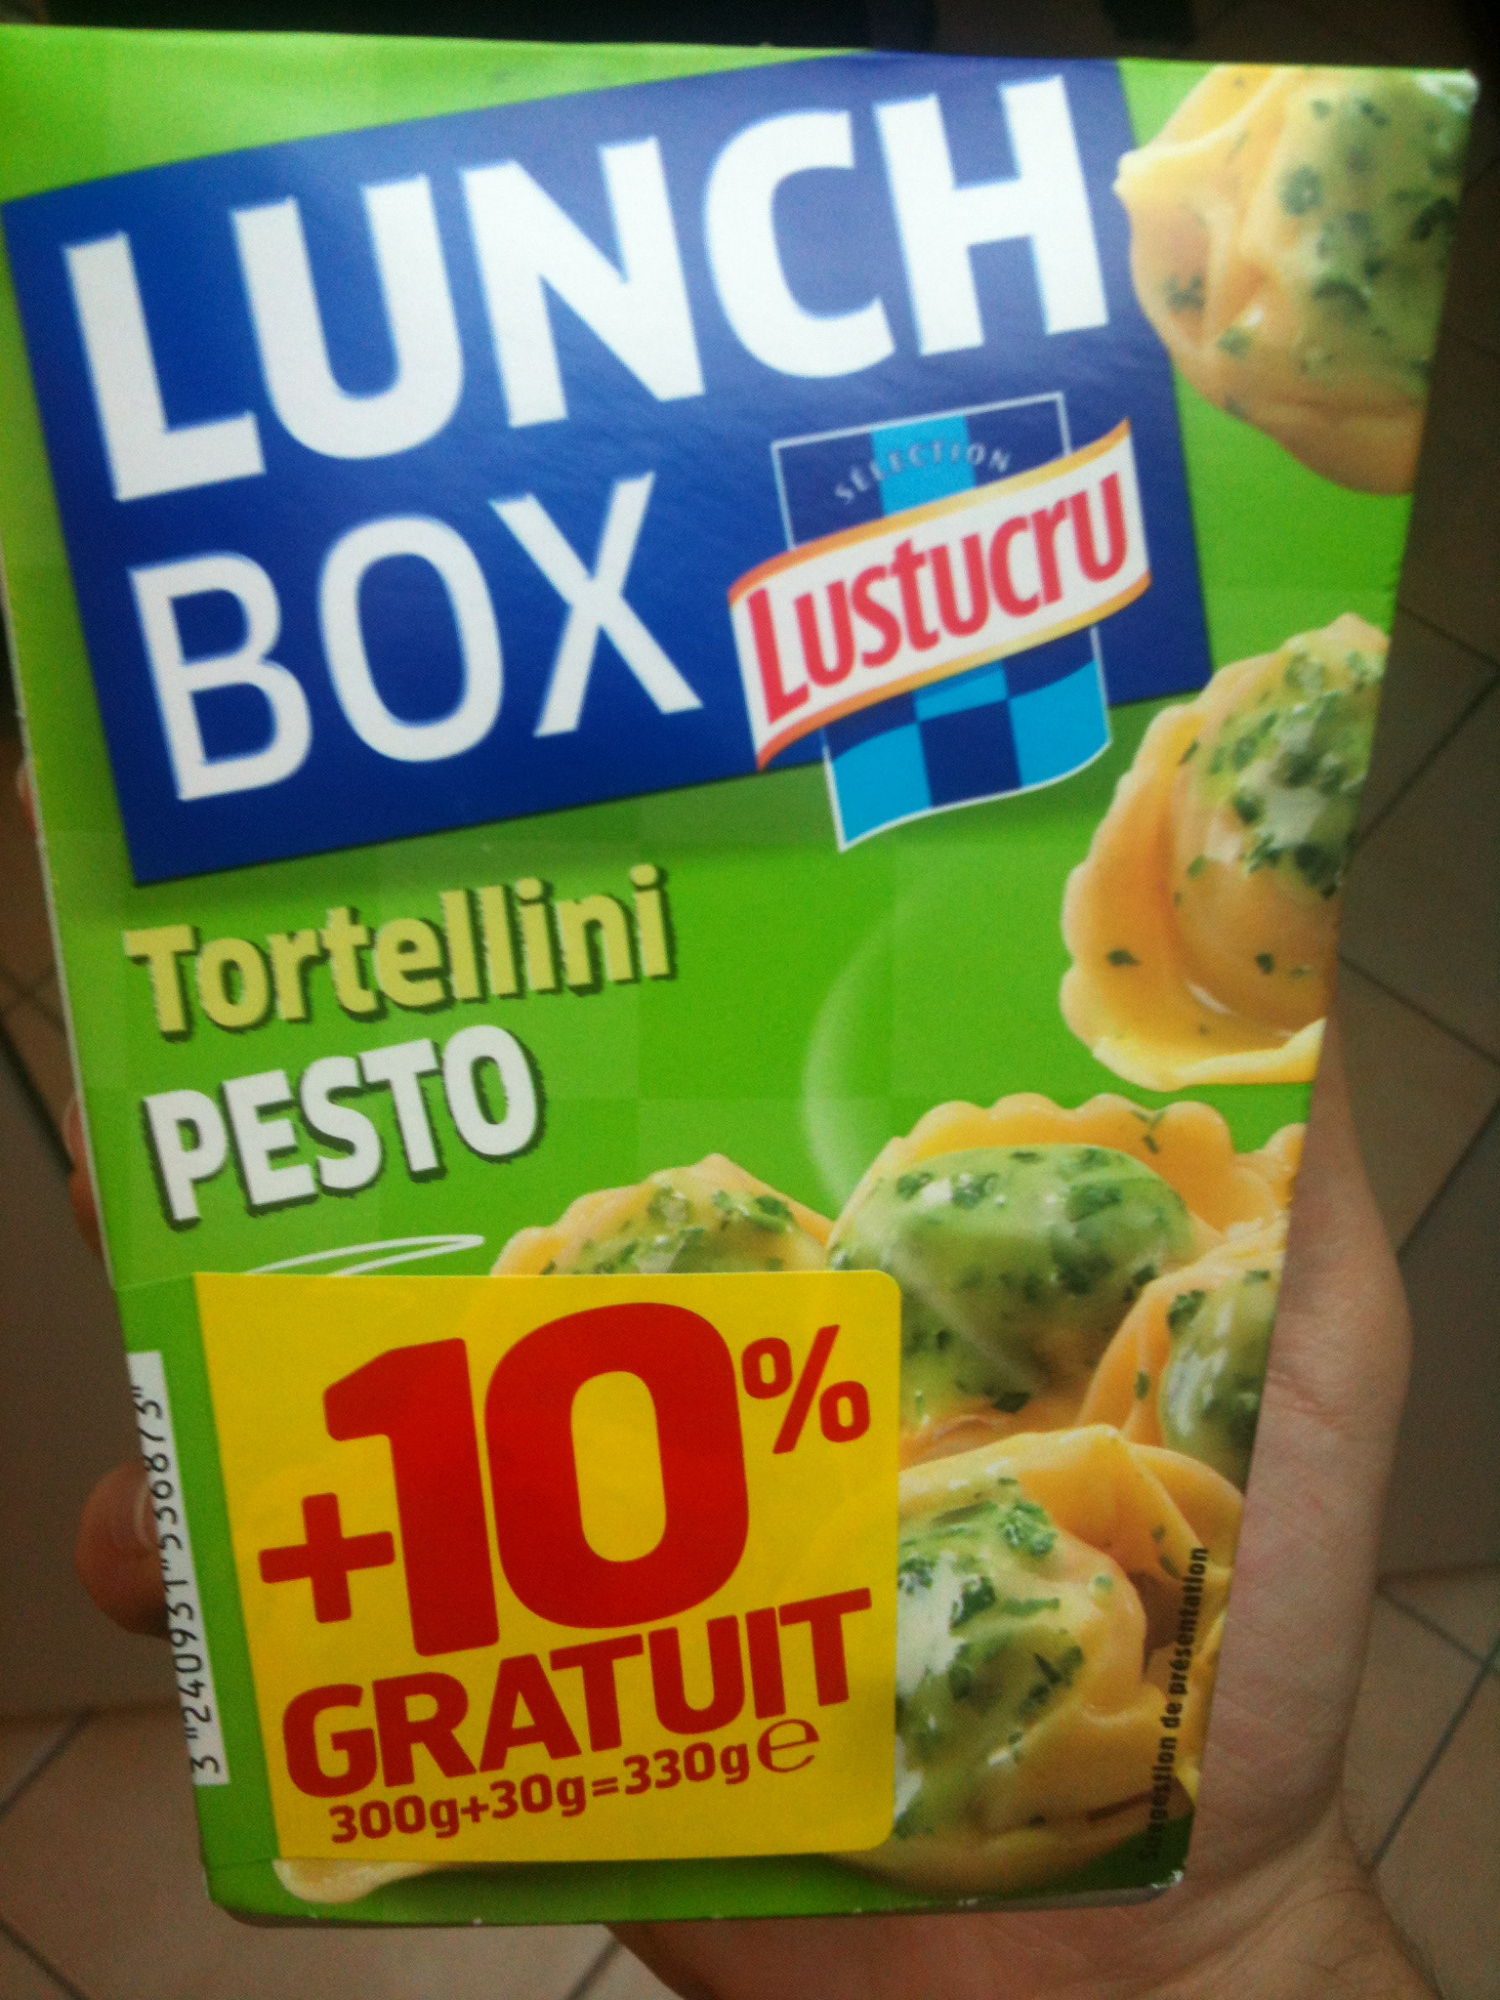 Tortellini Pesto (+ 10 % Gratuit), LunchBox - Produit